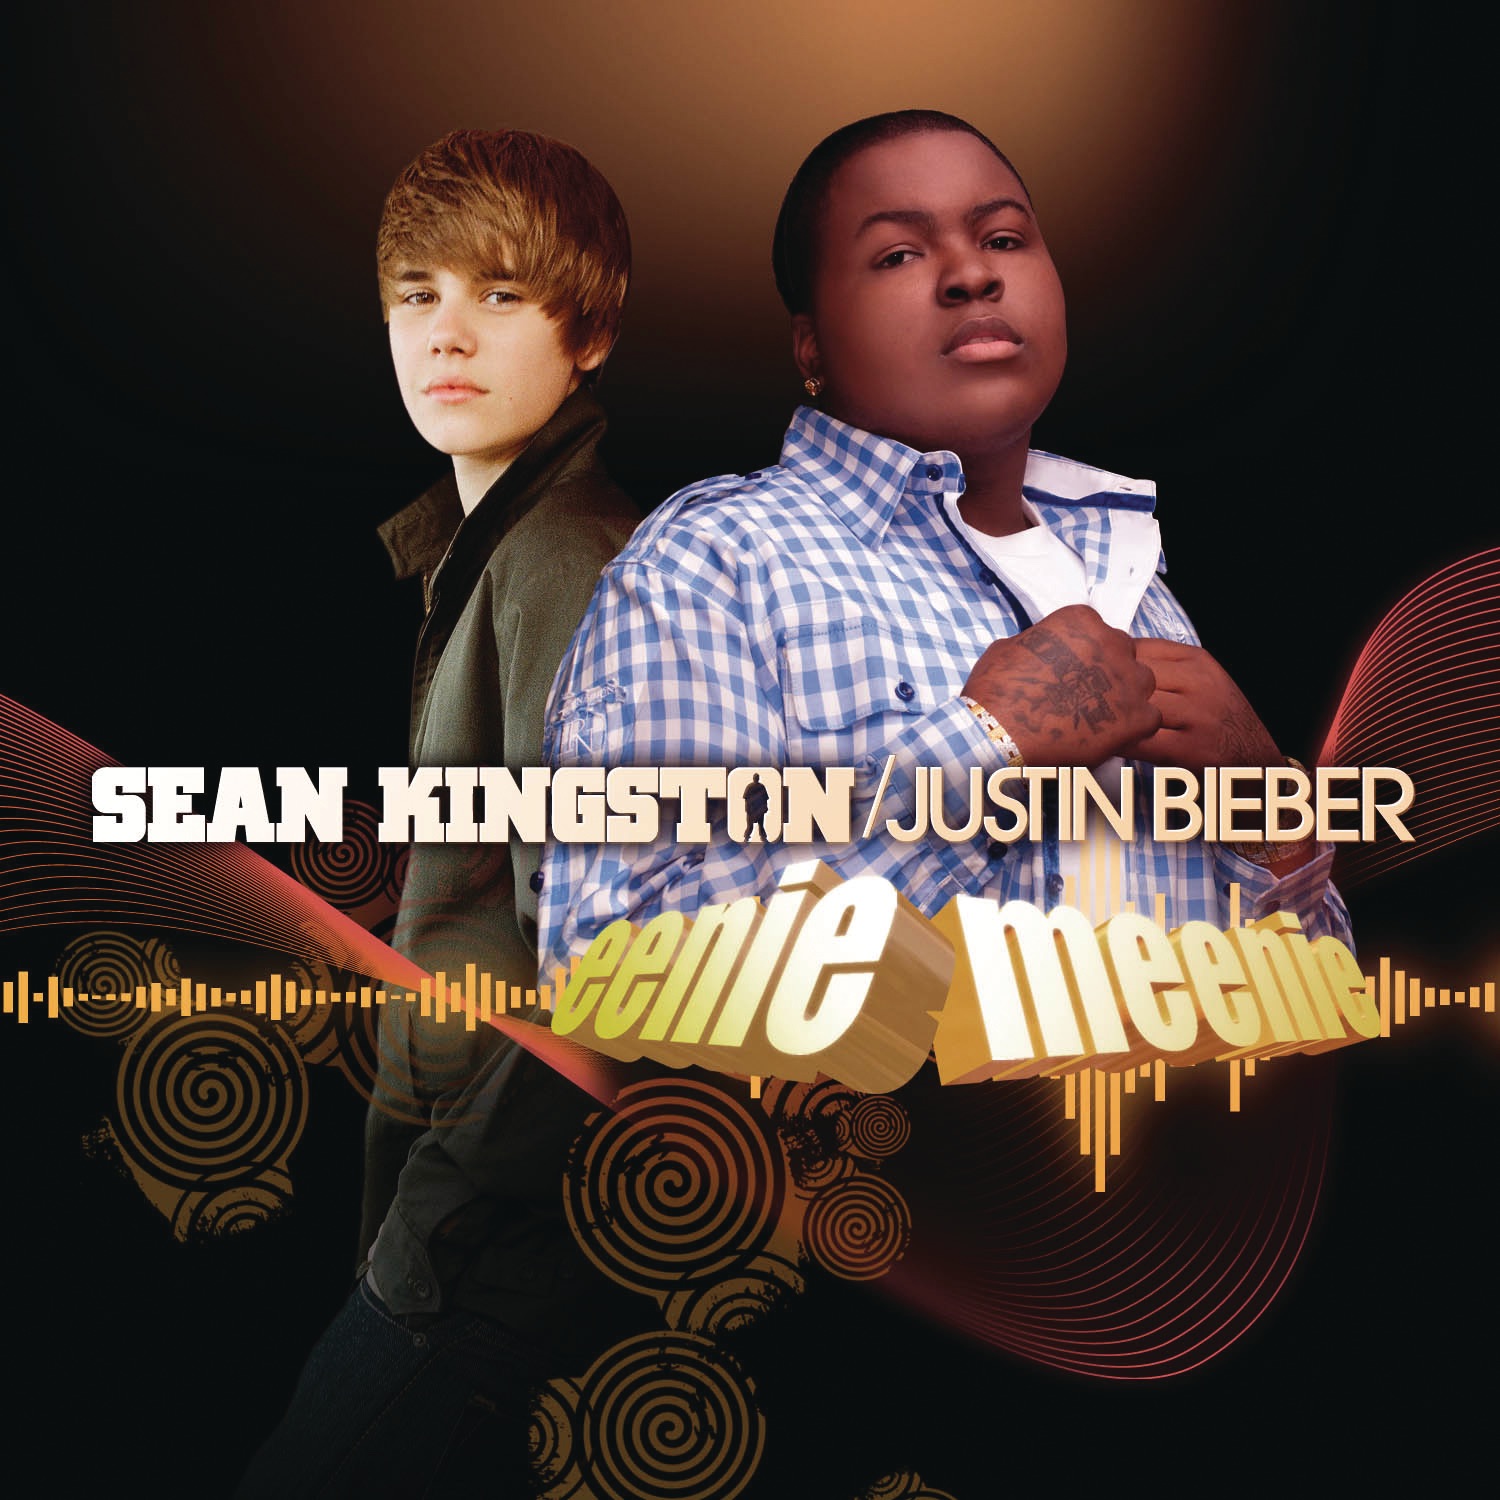 Sean Kingston & Justin Bieber Eenie Meenie cover artwork